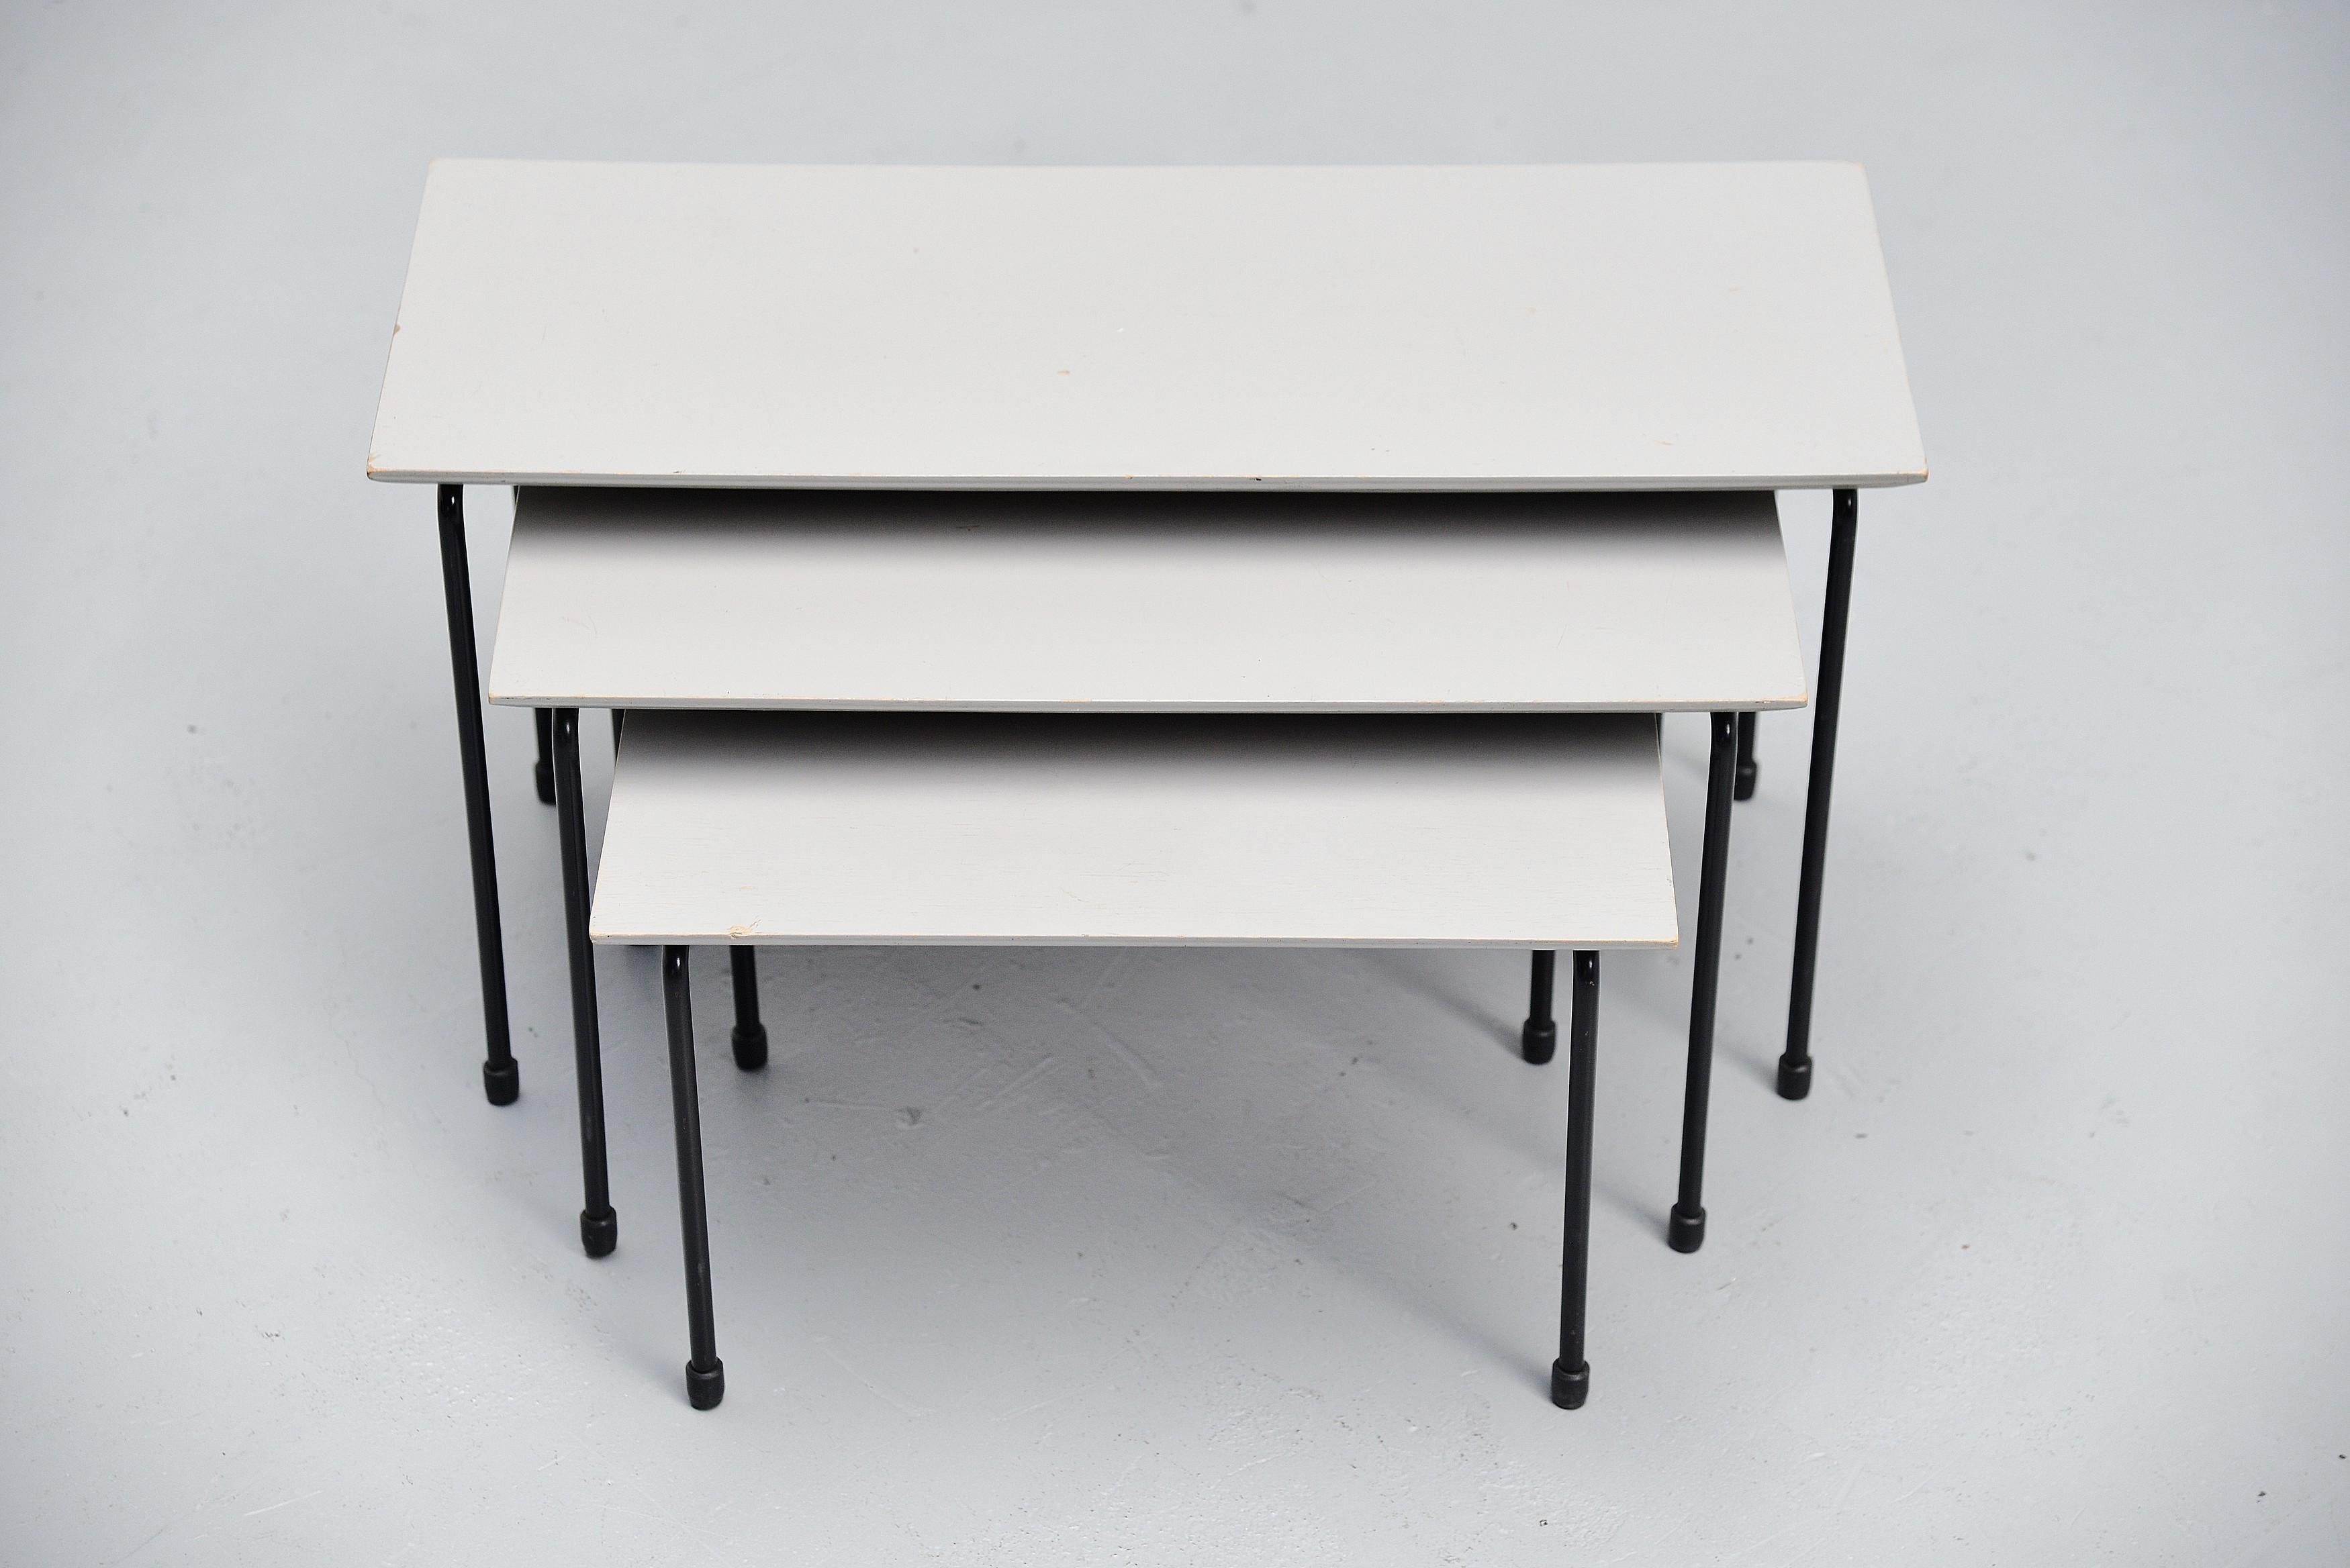 Seltenes modernistisches Tischset, entworfen von Martin Visser und hergestellt von 't Spectrum, Holland 1956. Dieses seltene Tischset stammt aus der ersten Produktion von 1956, es wurde nur bis 1957 hergestellt. Die Tische haben sehr schöne grau